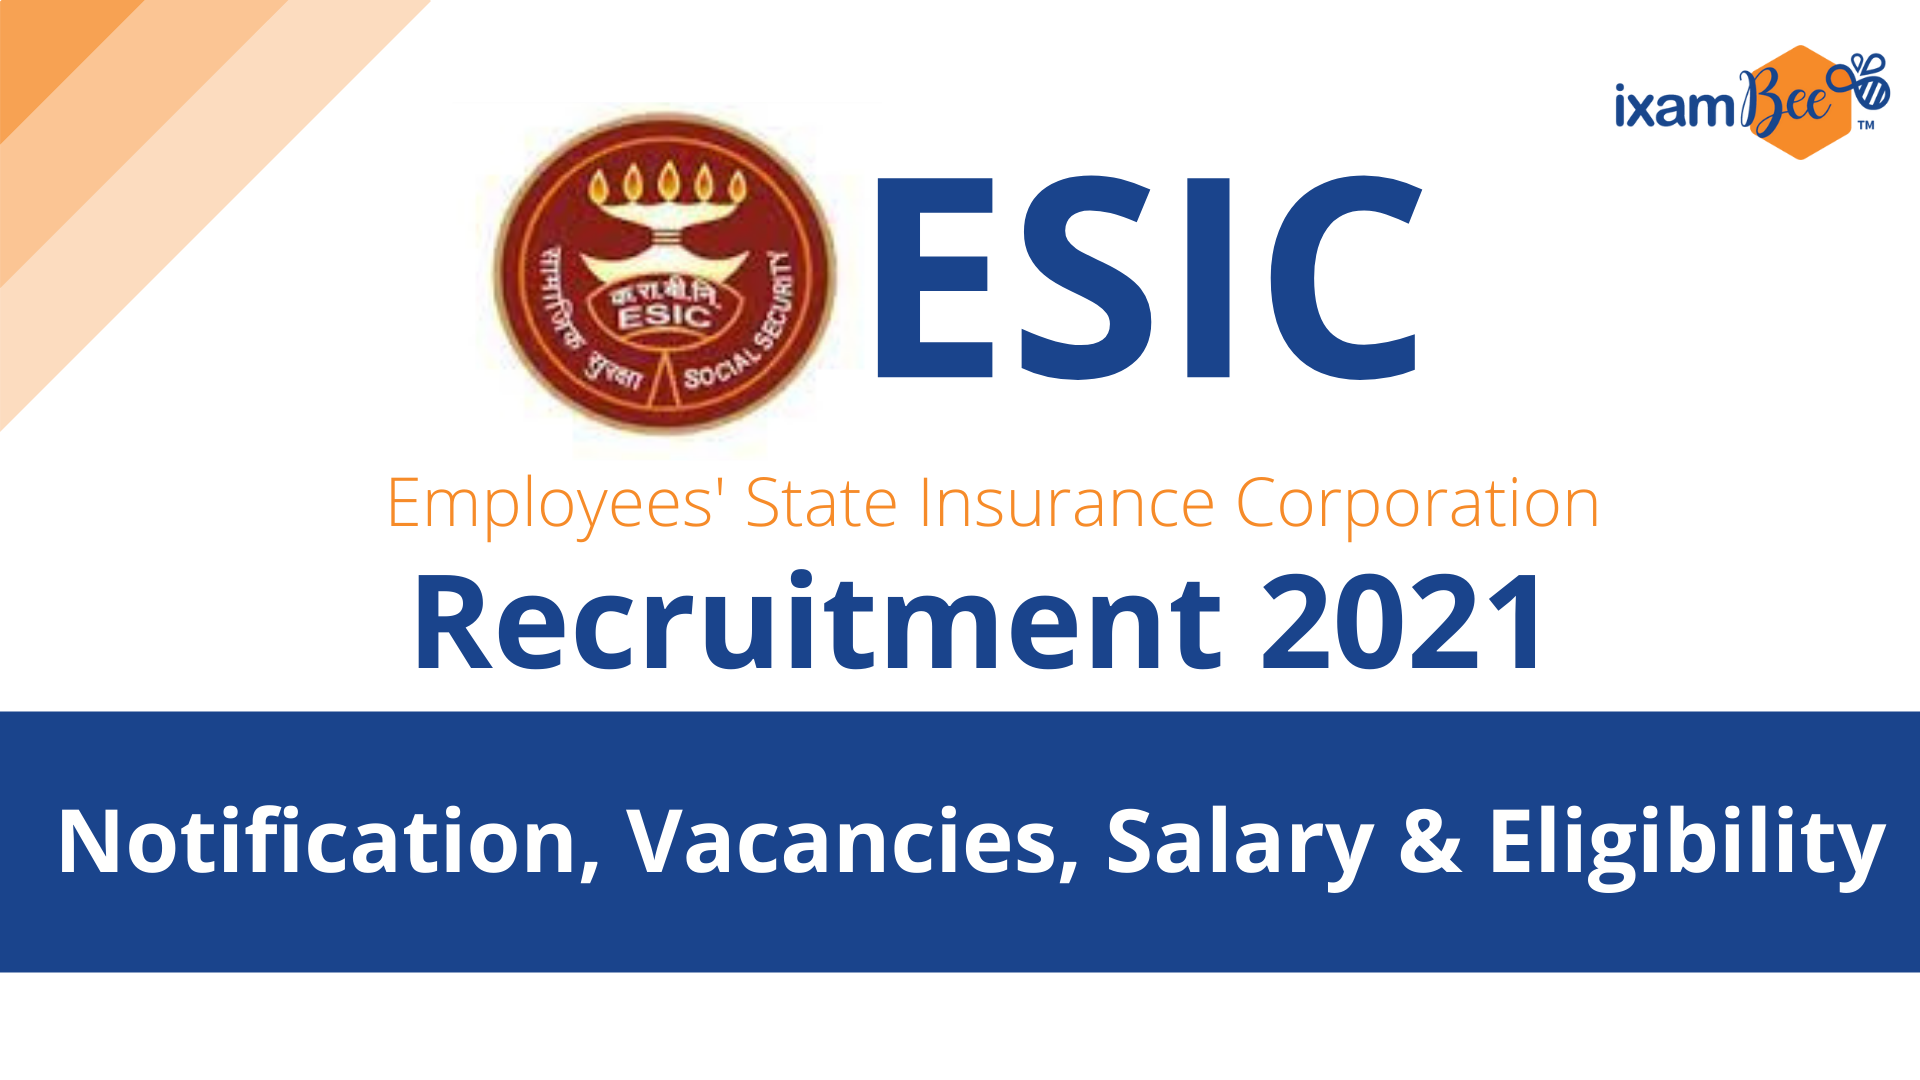 ESIC Recruitment 2021